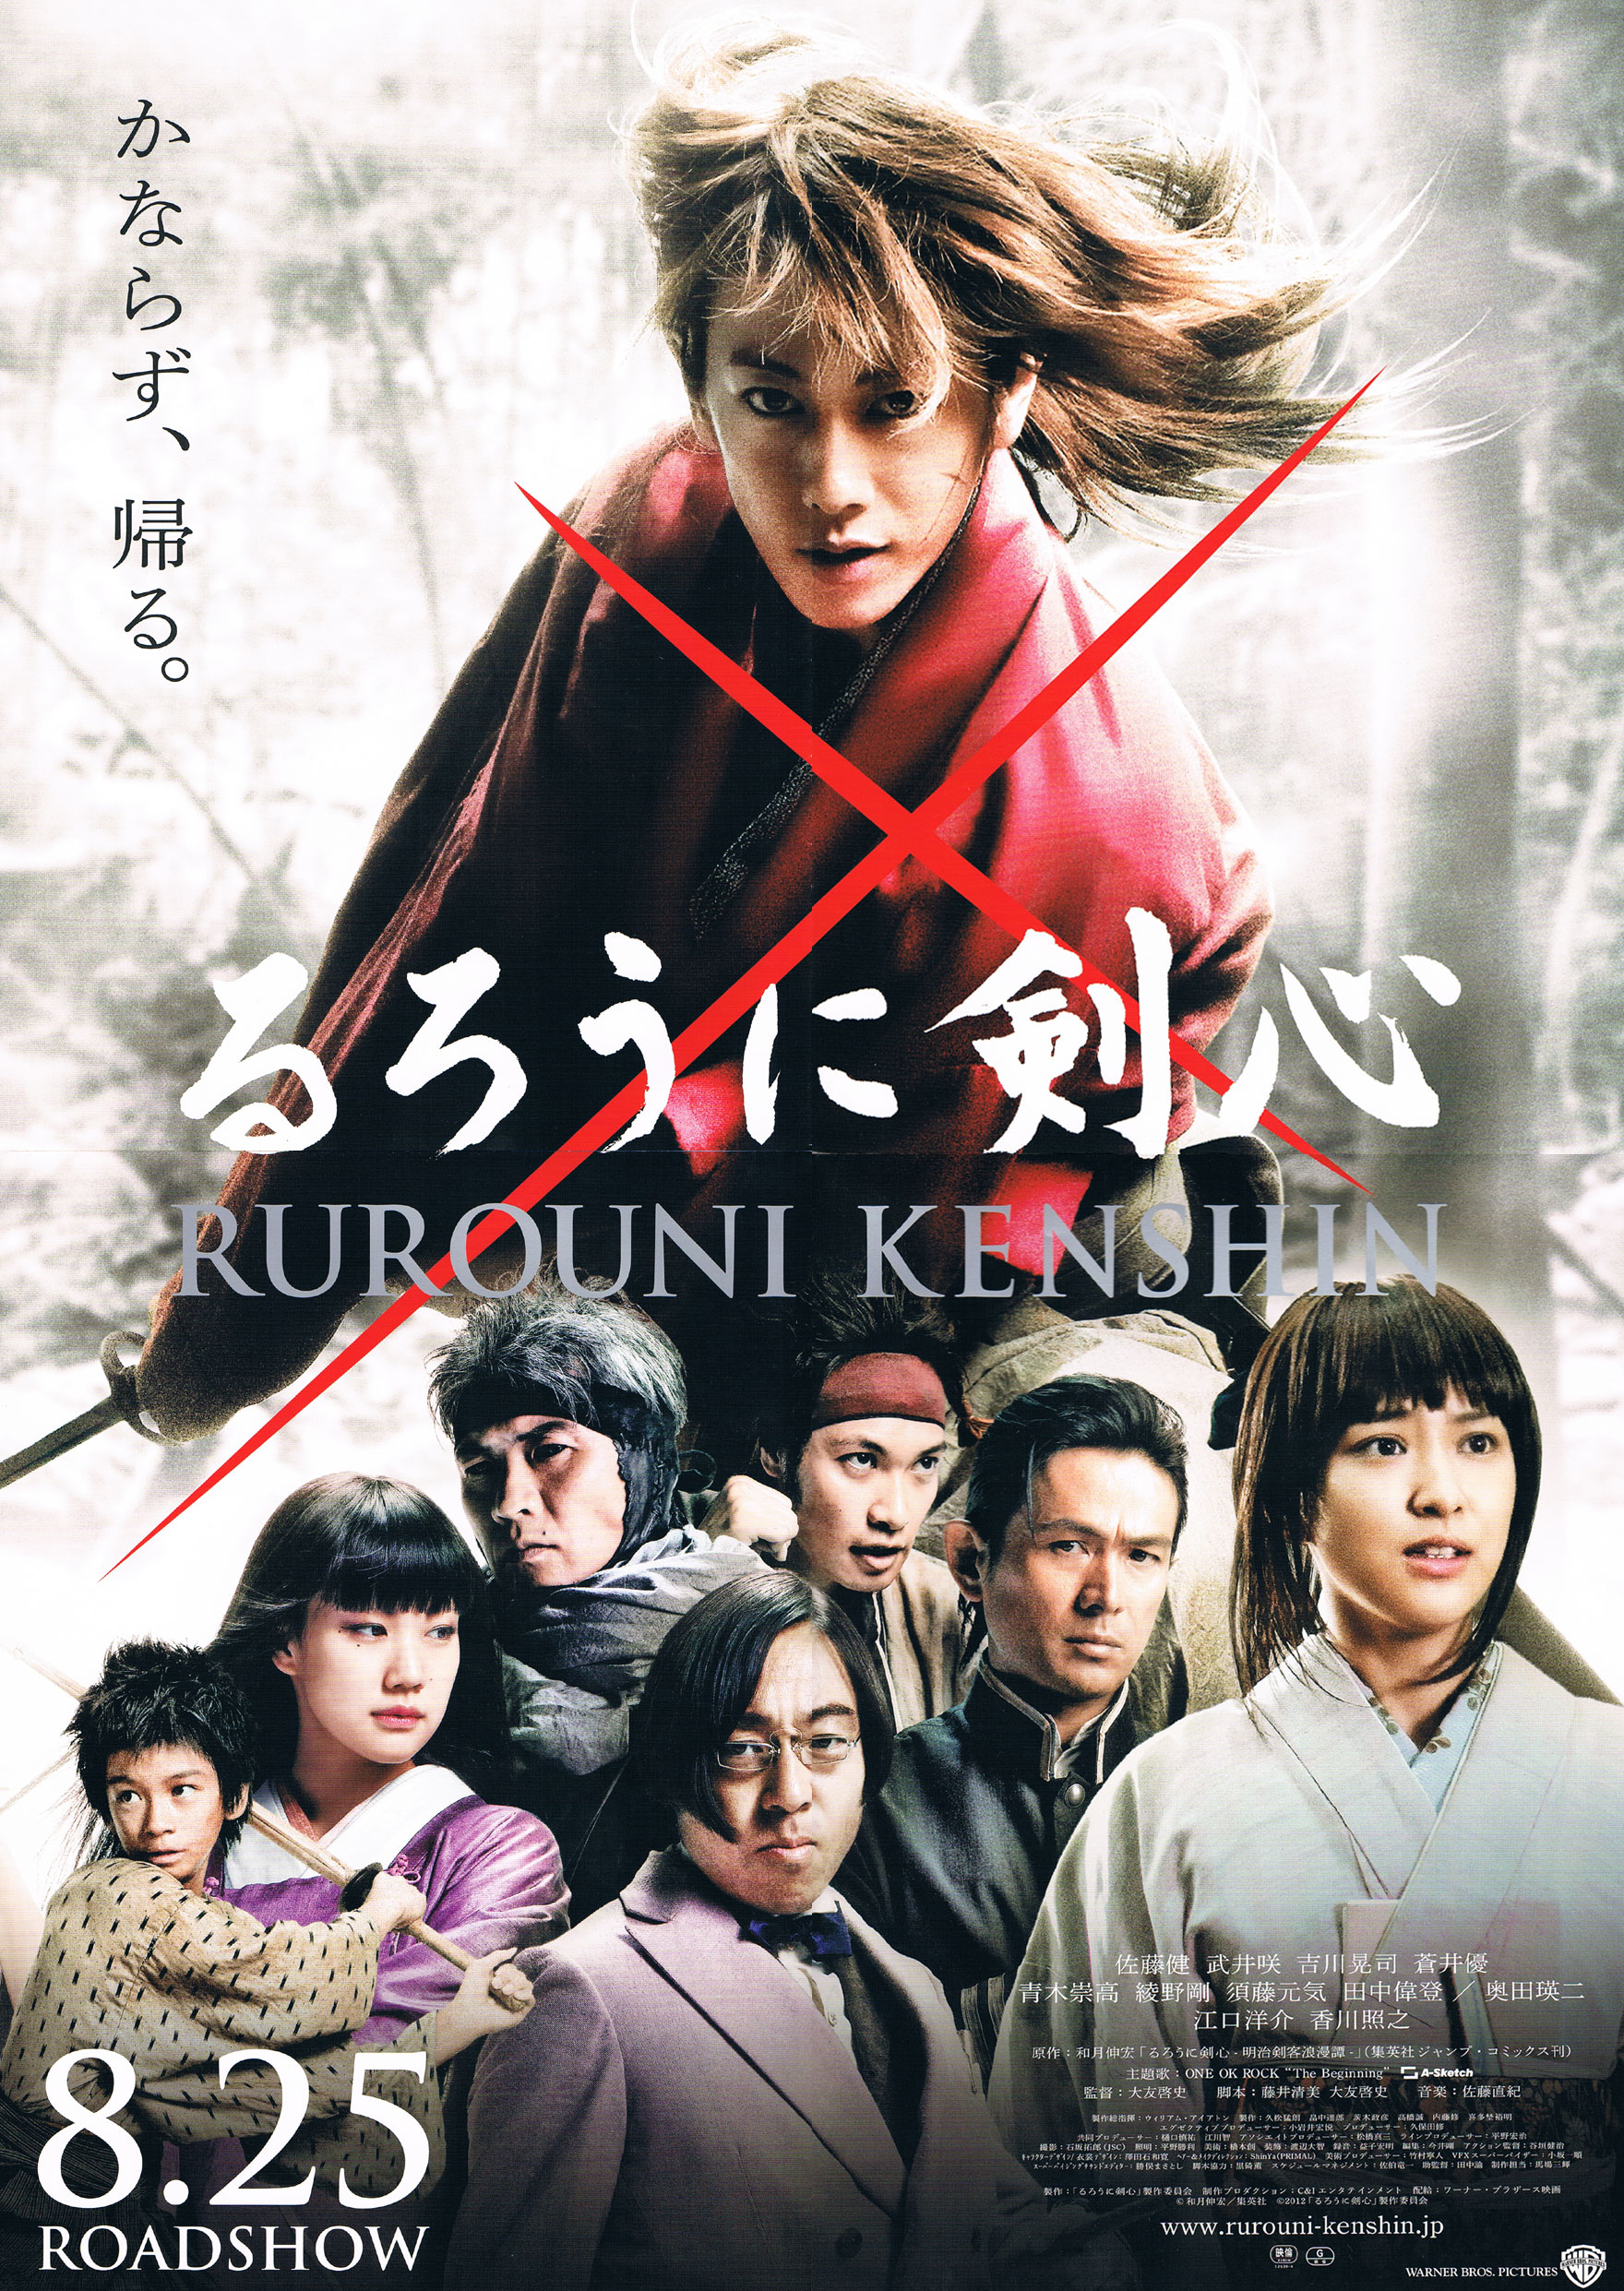 Rurouni Kenshin: Origins | Rurouni Kenshin Wiki | Fandom